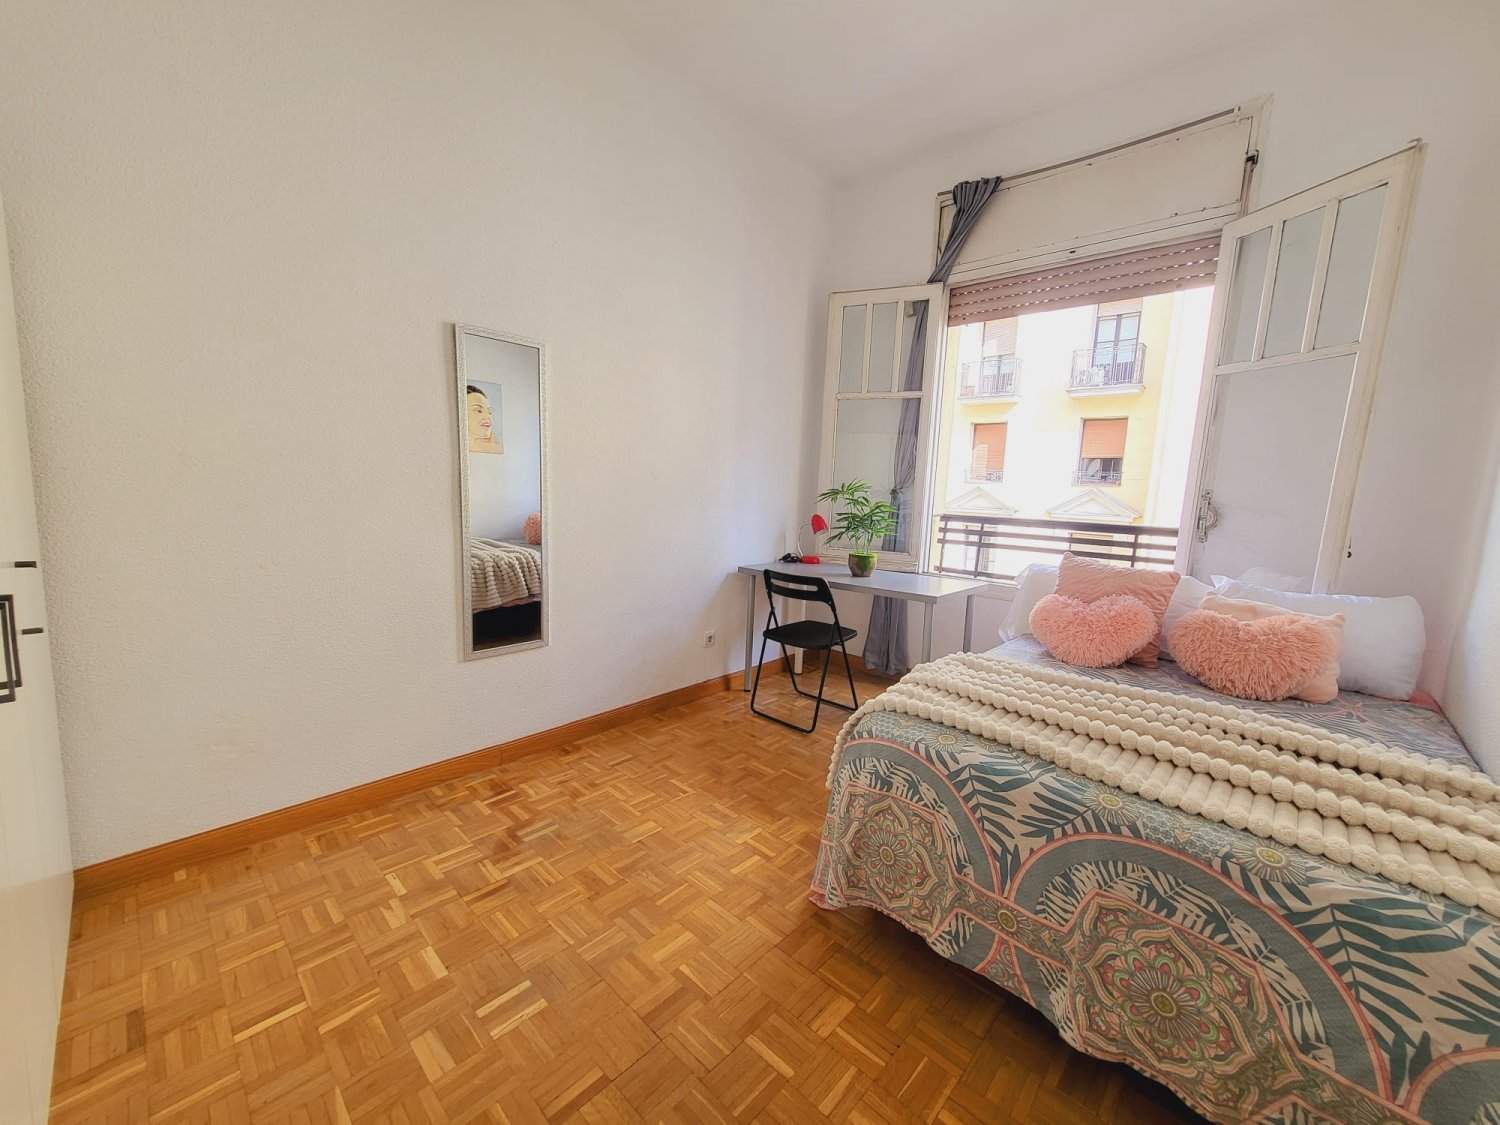 Habitaciones en piso compartido en Madrid - FRZB4